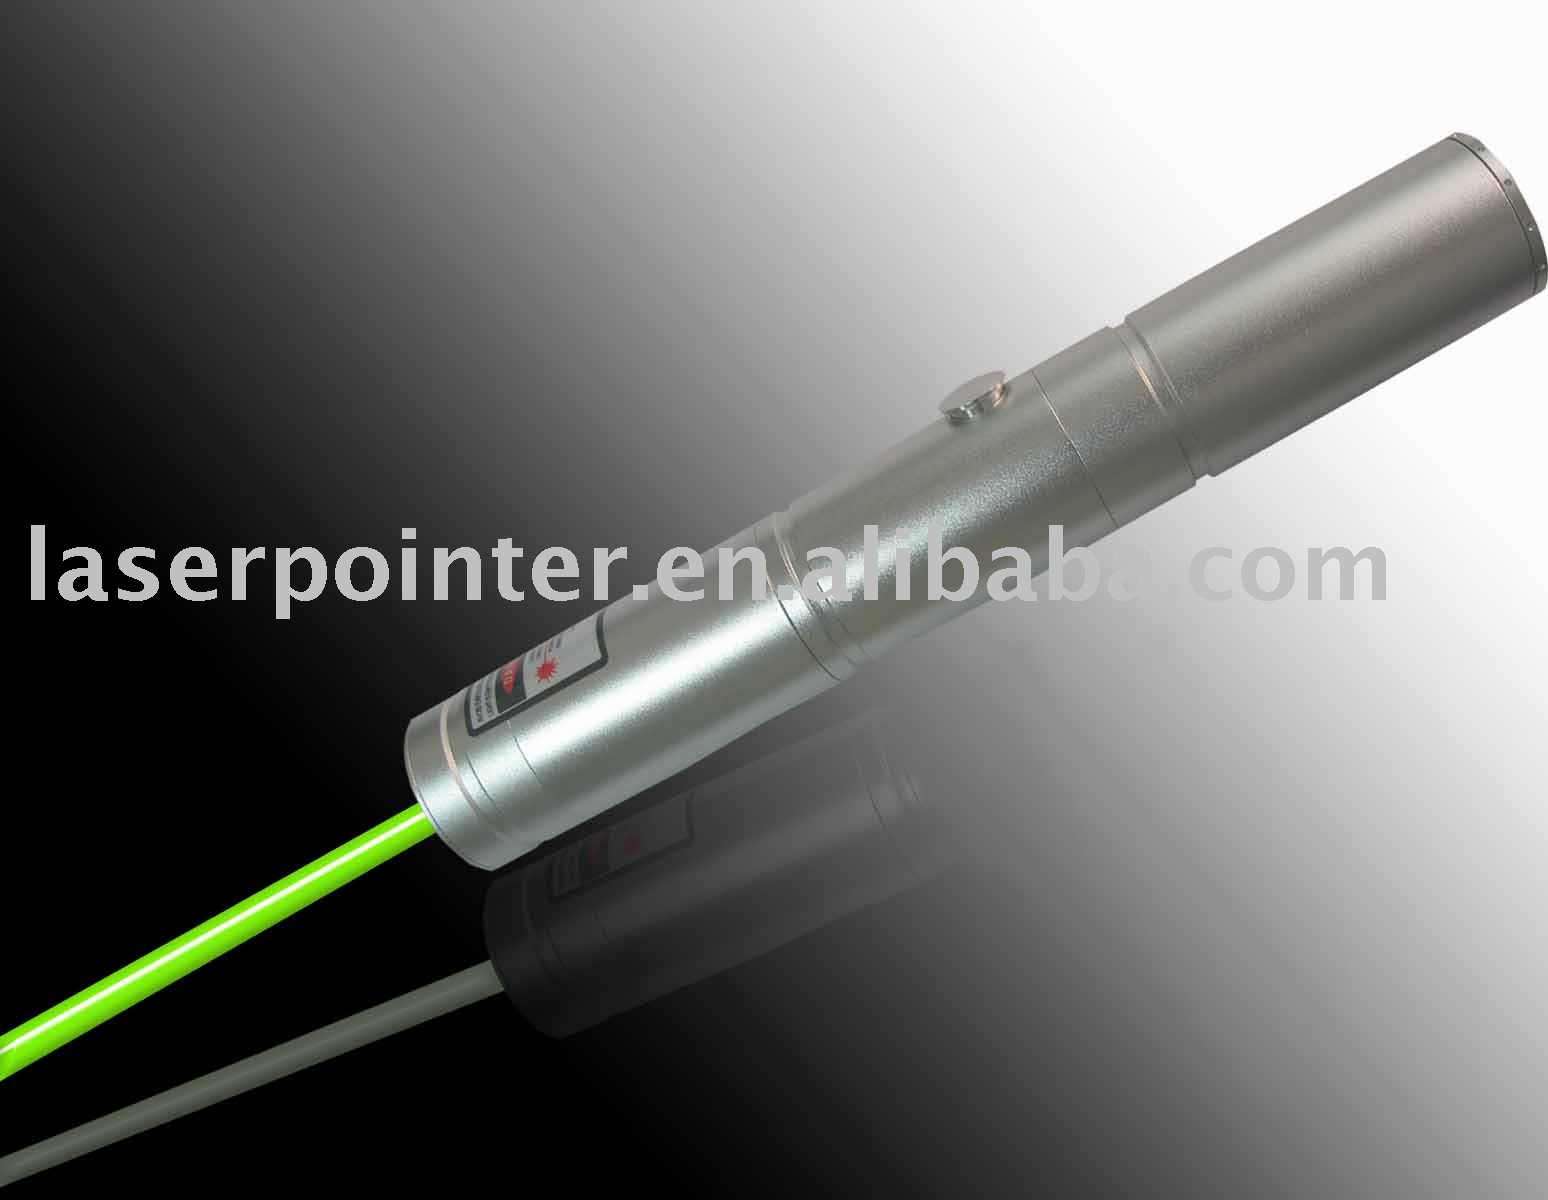 600mw_green_laser_pointer.jpg